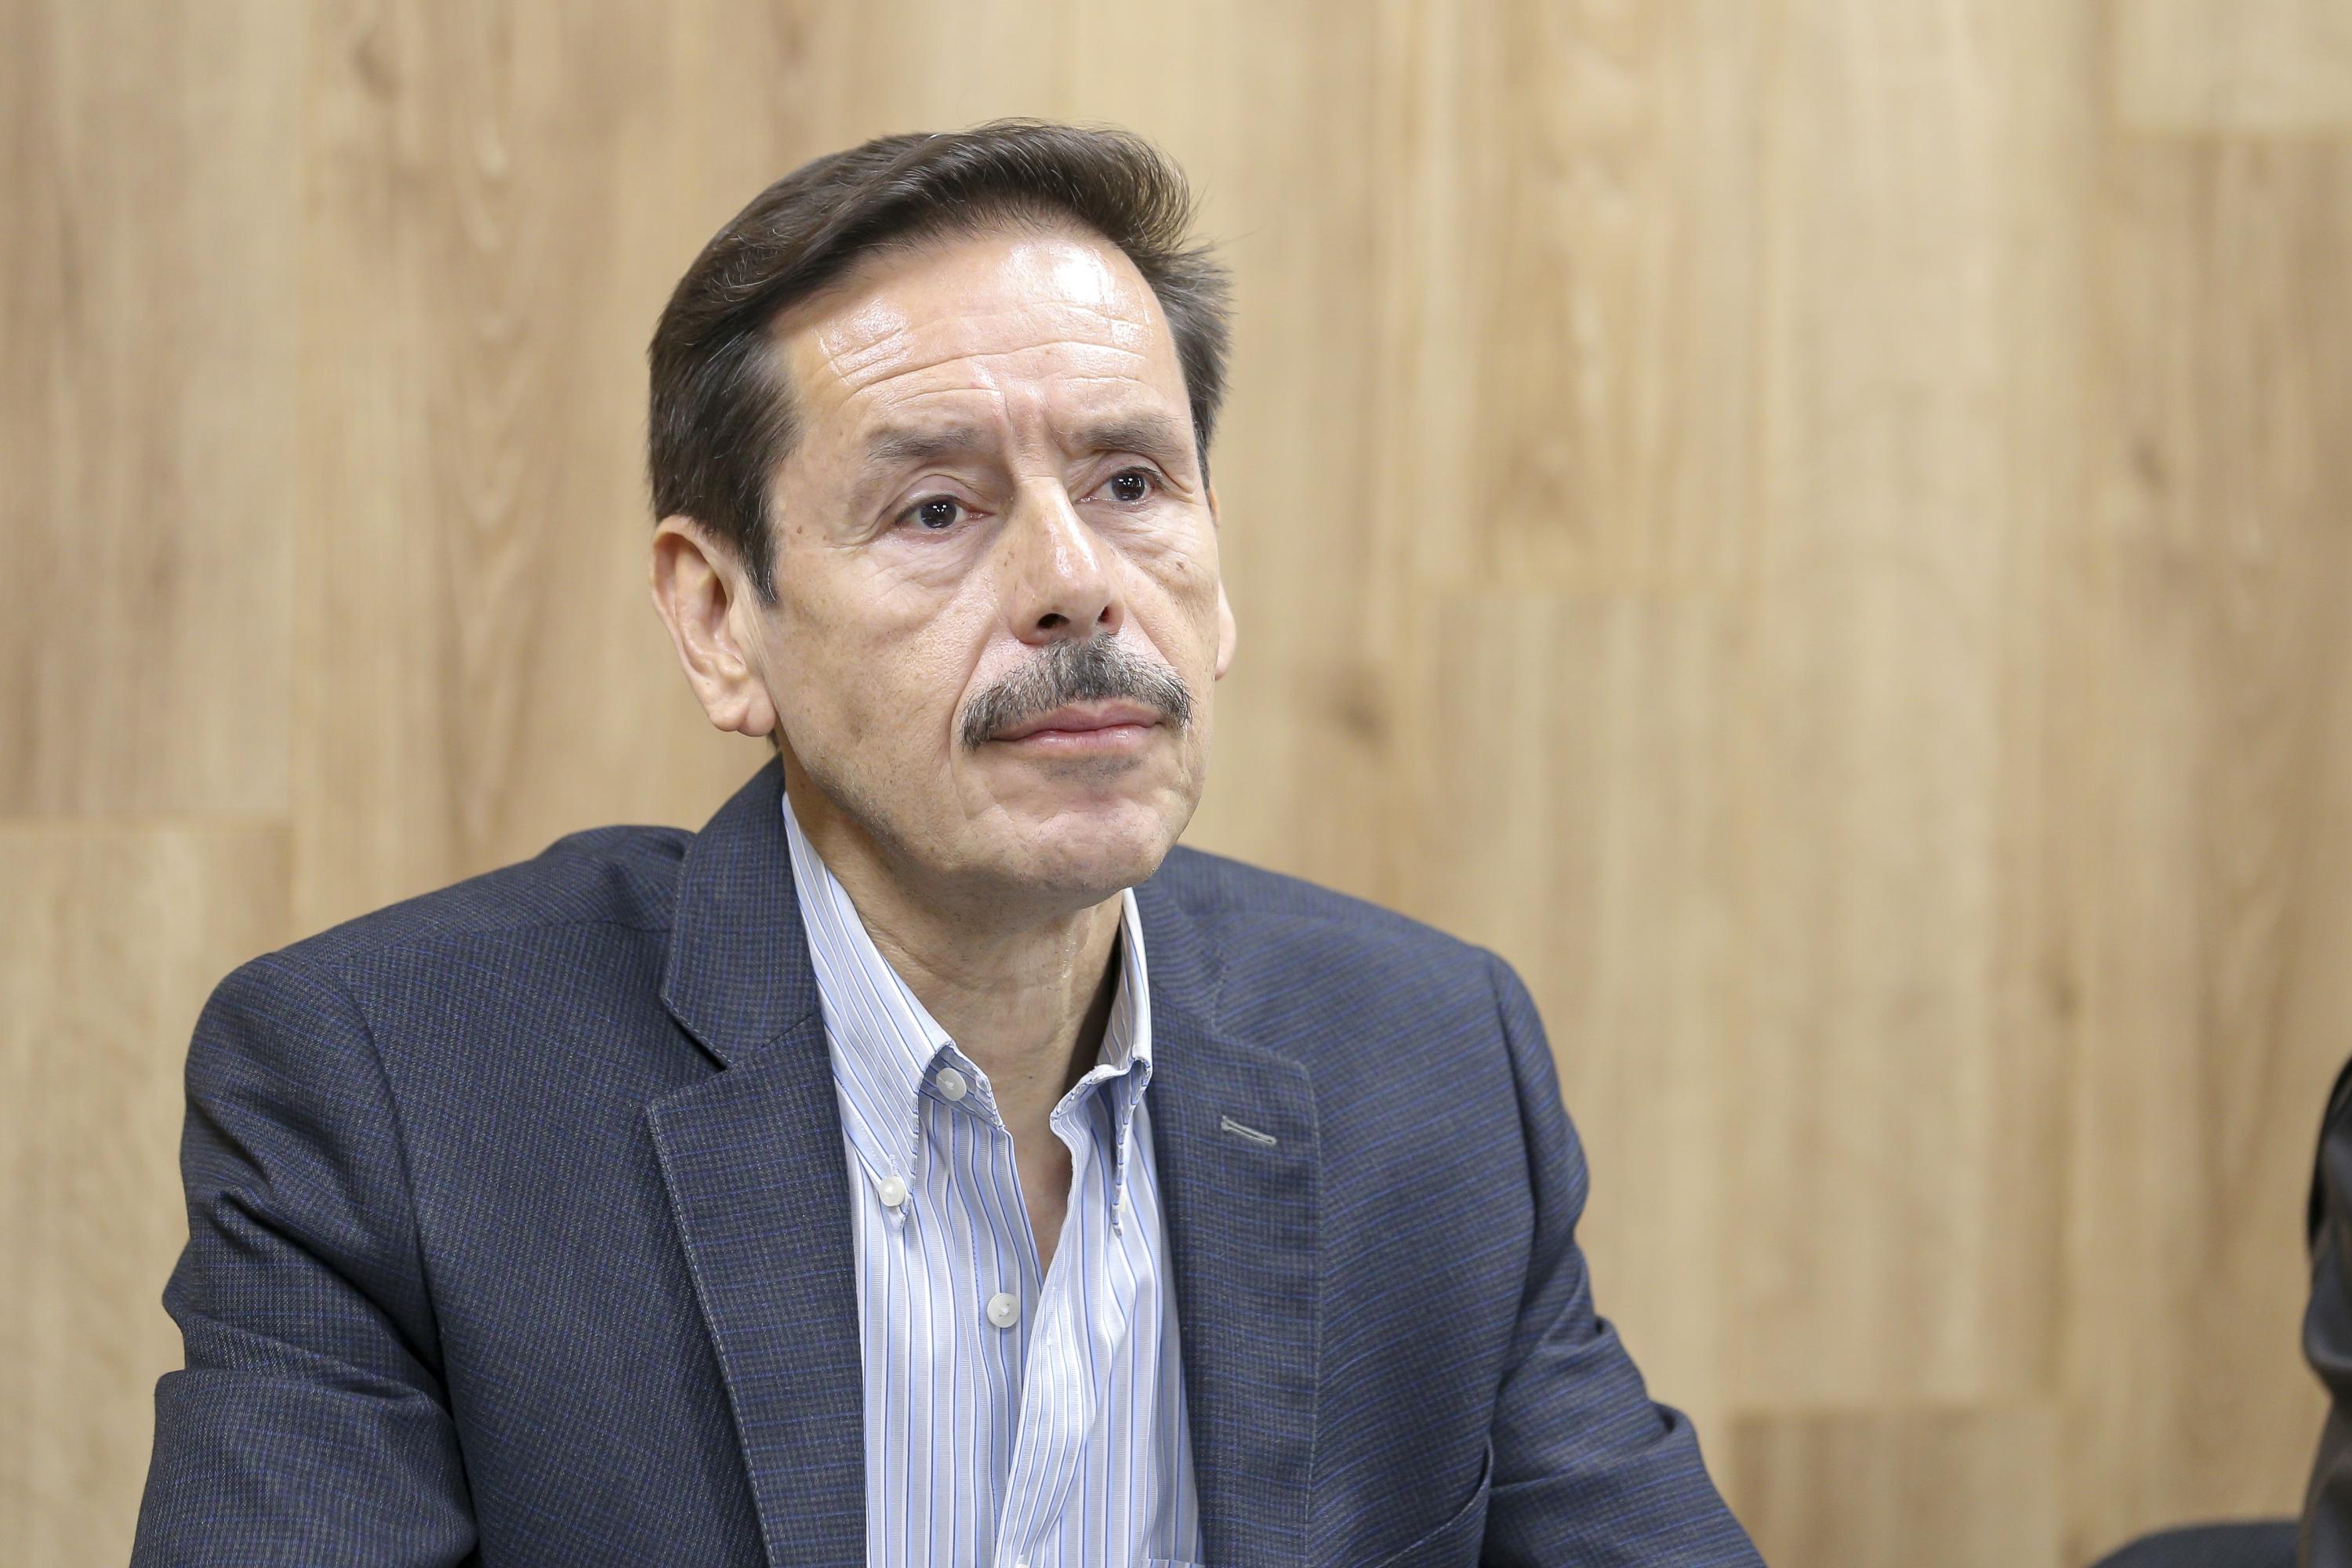 El Rector del Centro Universitario de Arte, Arquitectura y Diseño (CUAAD, doctor Francisco Javier González Madariaga.